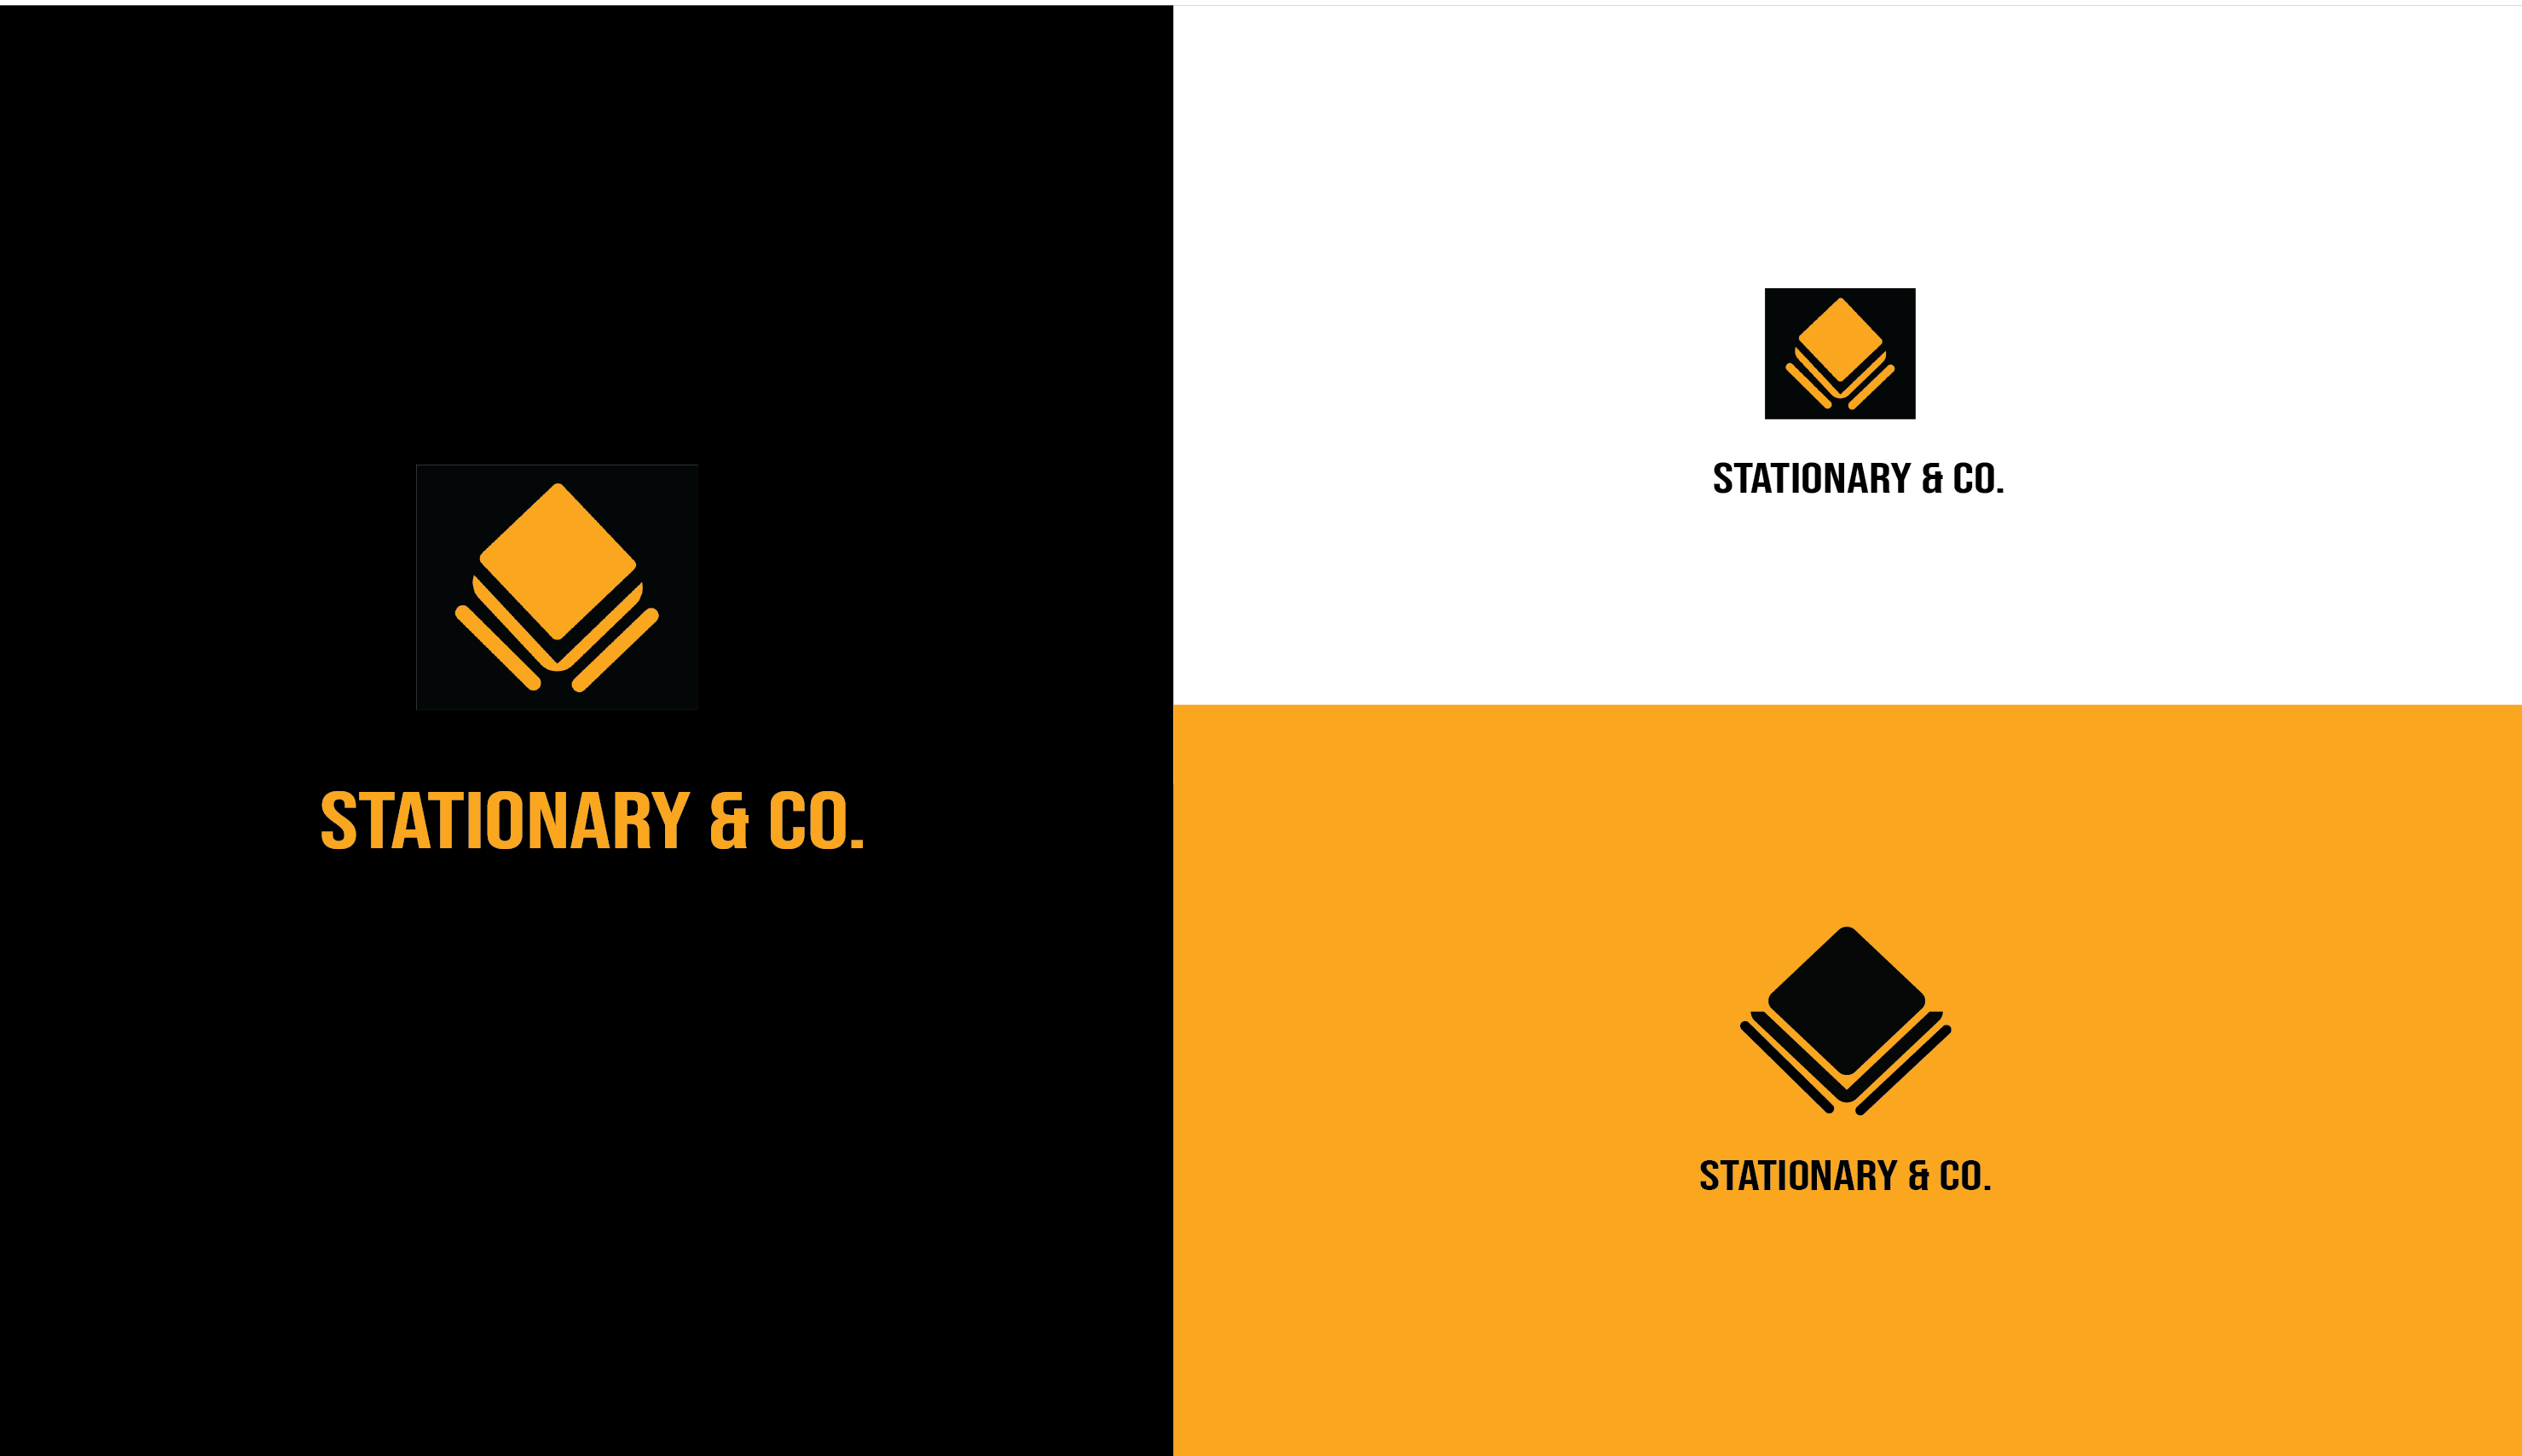 Stationary & Co logo mark/ logo /